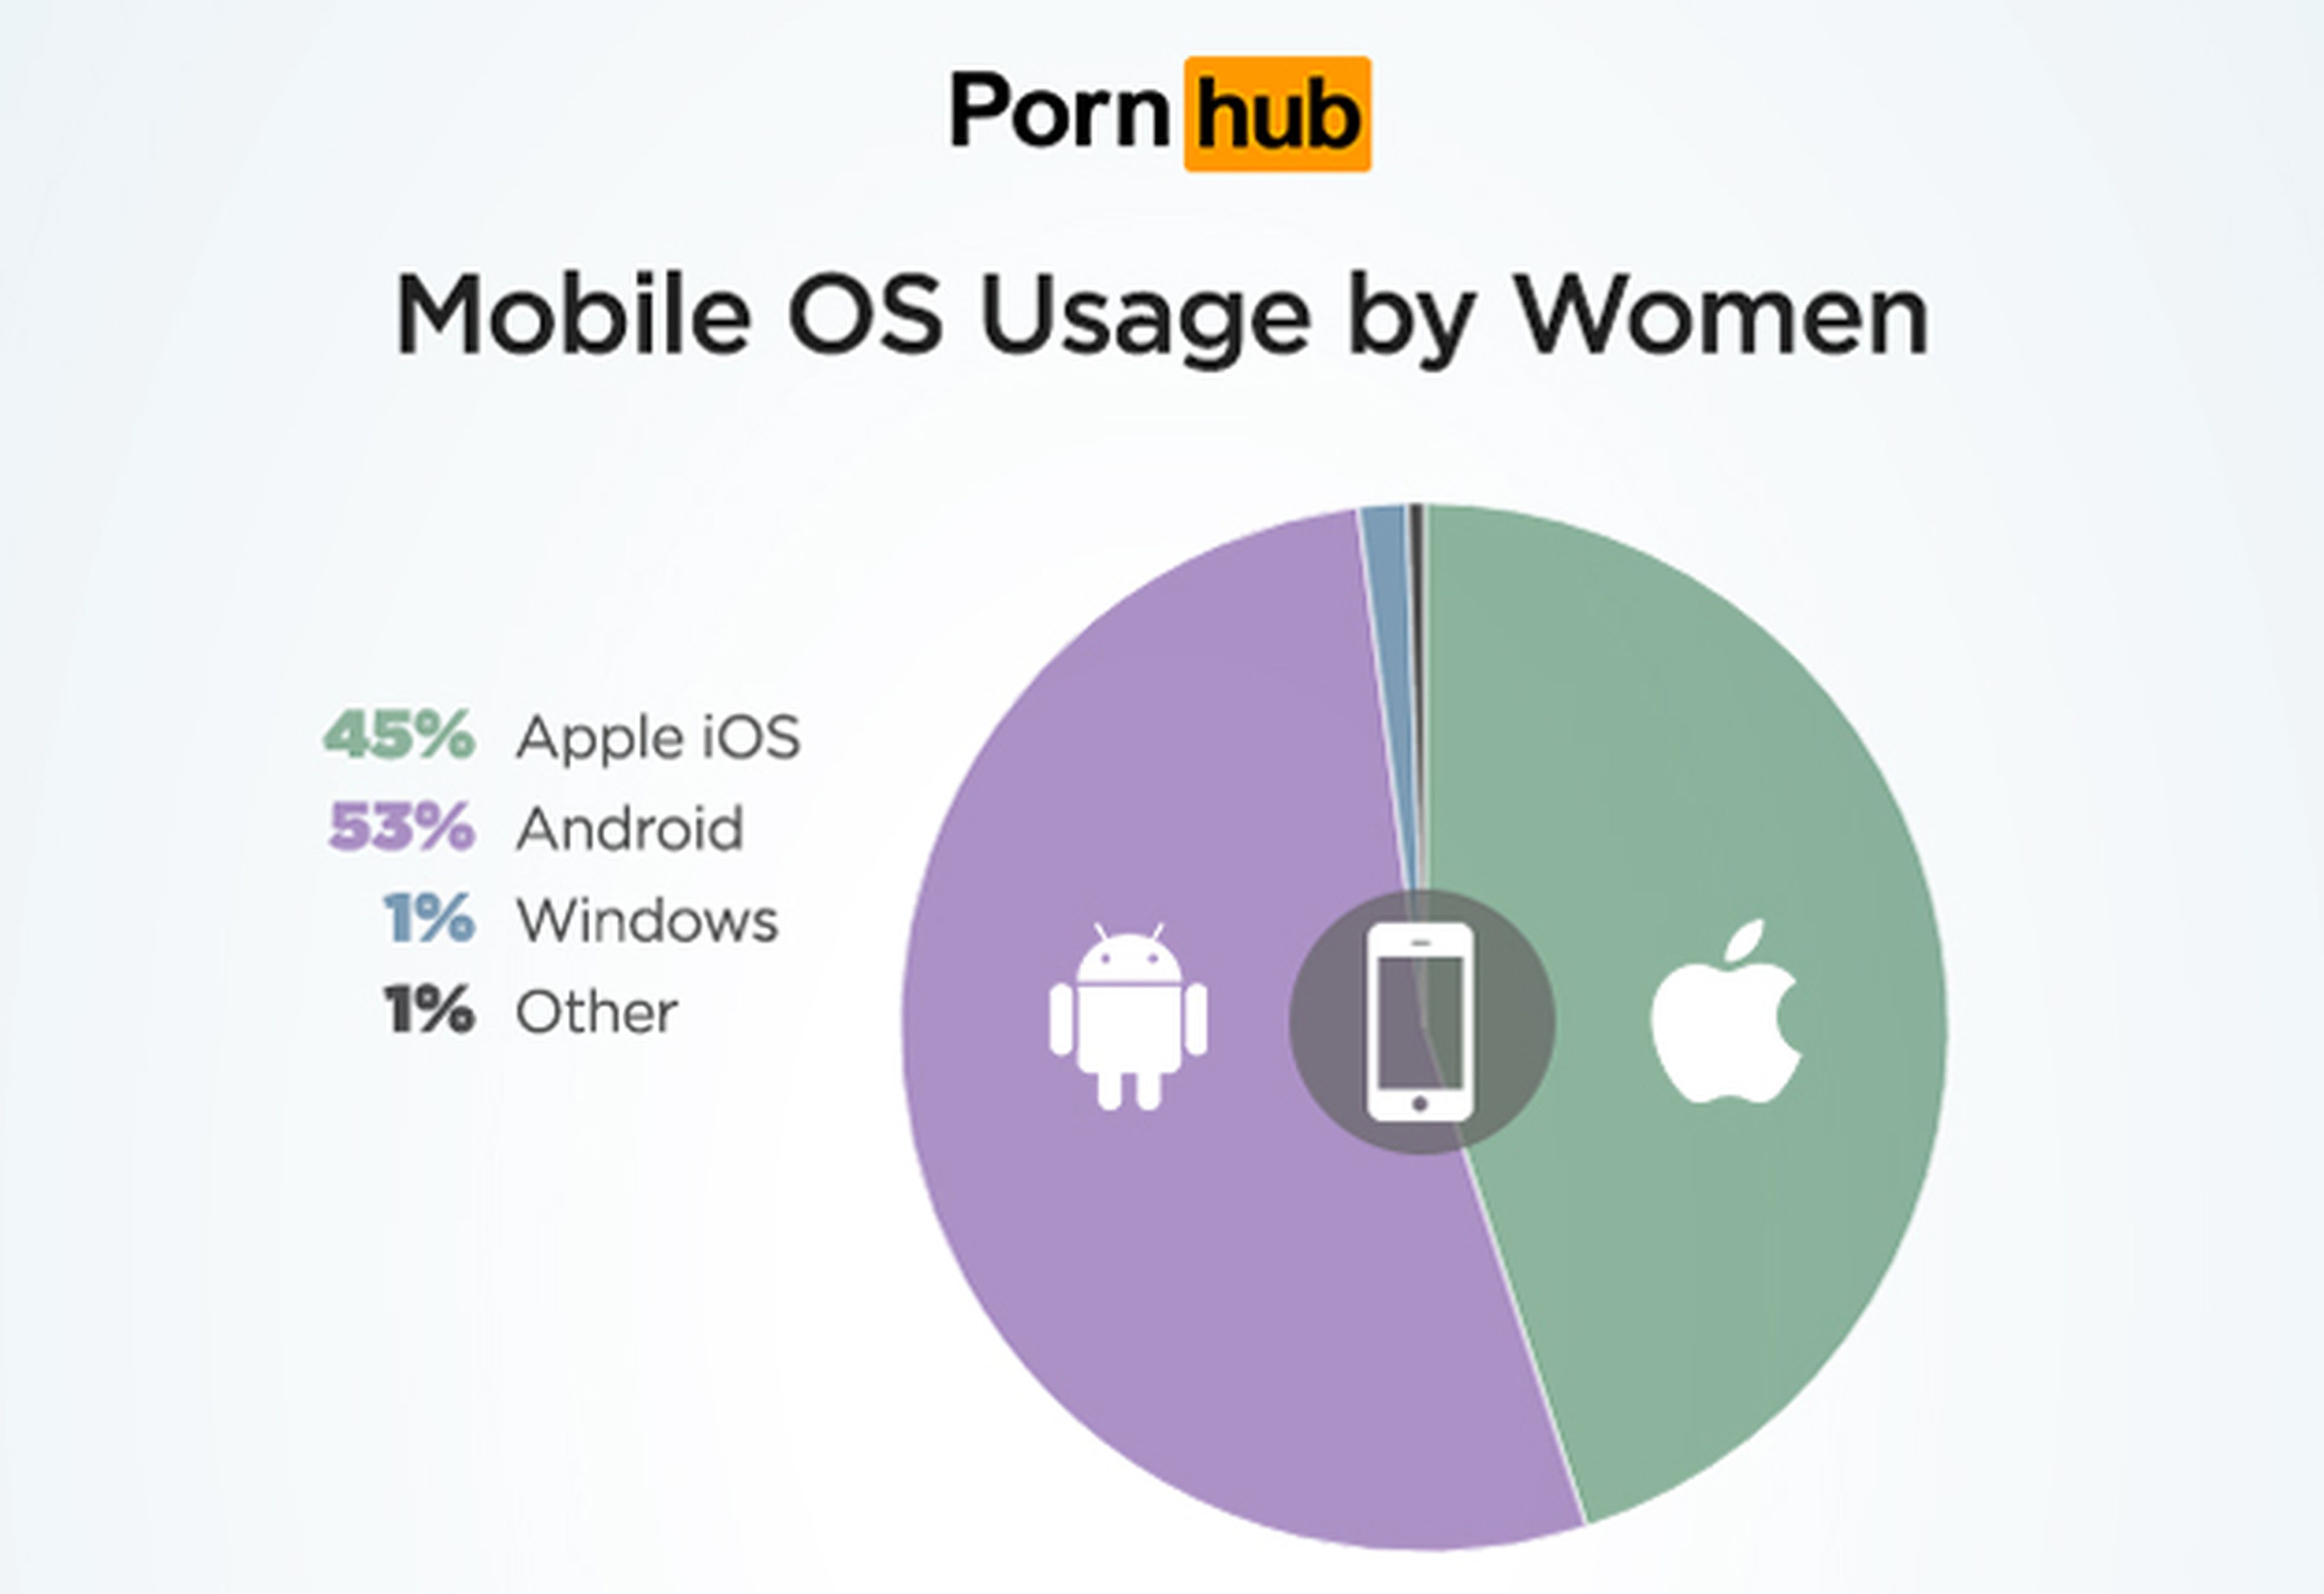 Los sistemas operativos más populares entre las visitas de mujeres a Pornhub